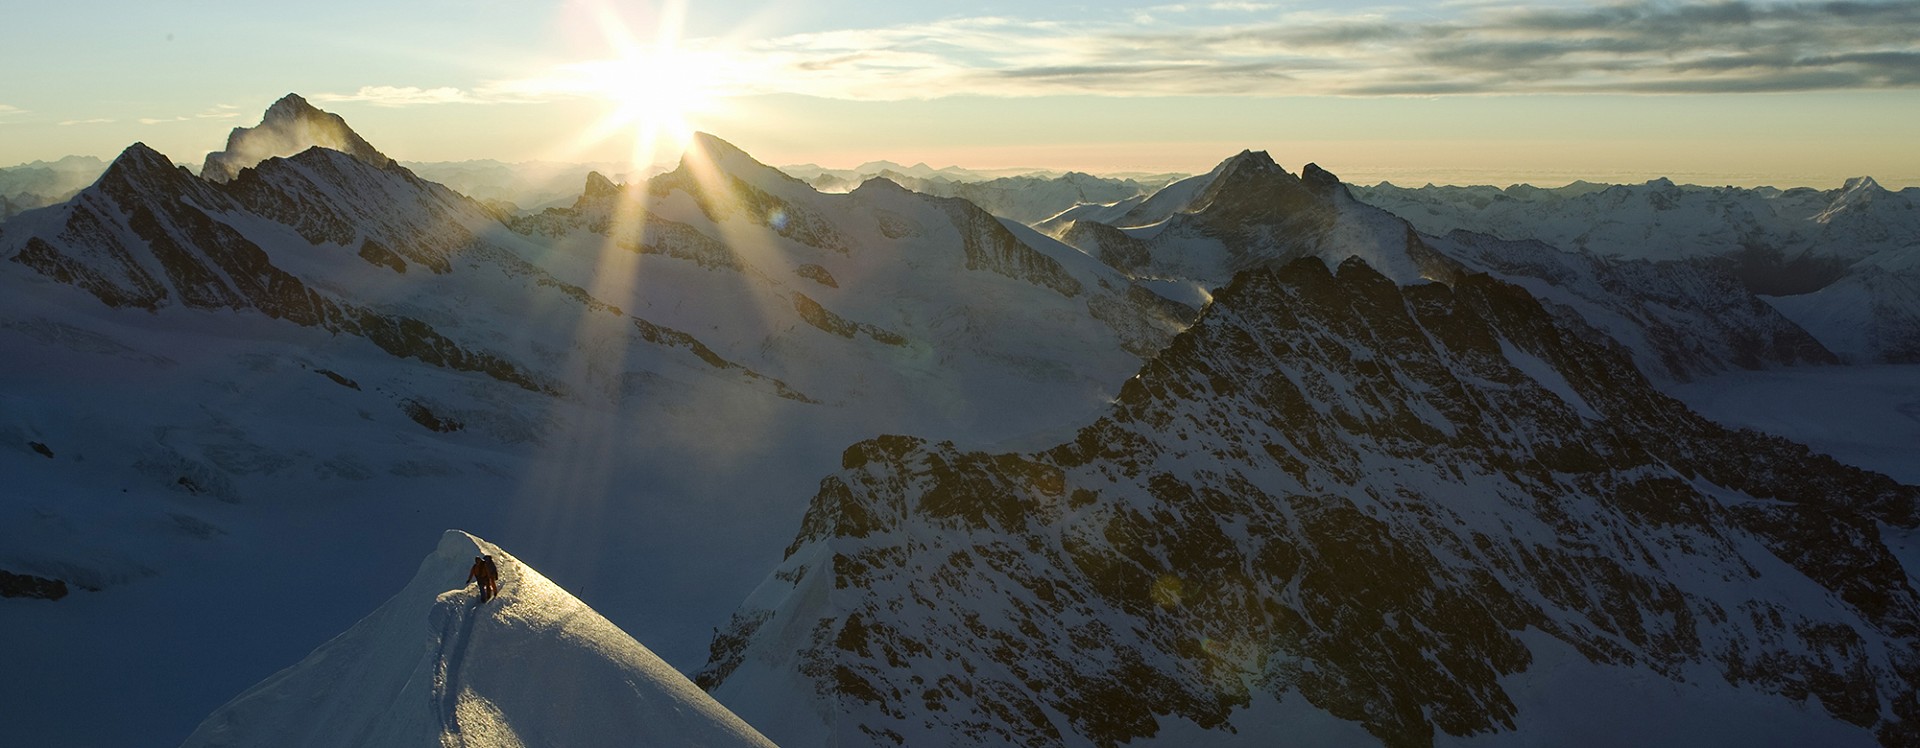 Association des guides de montagne Grindelwald